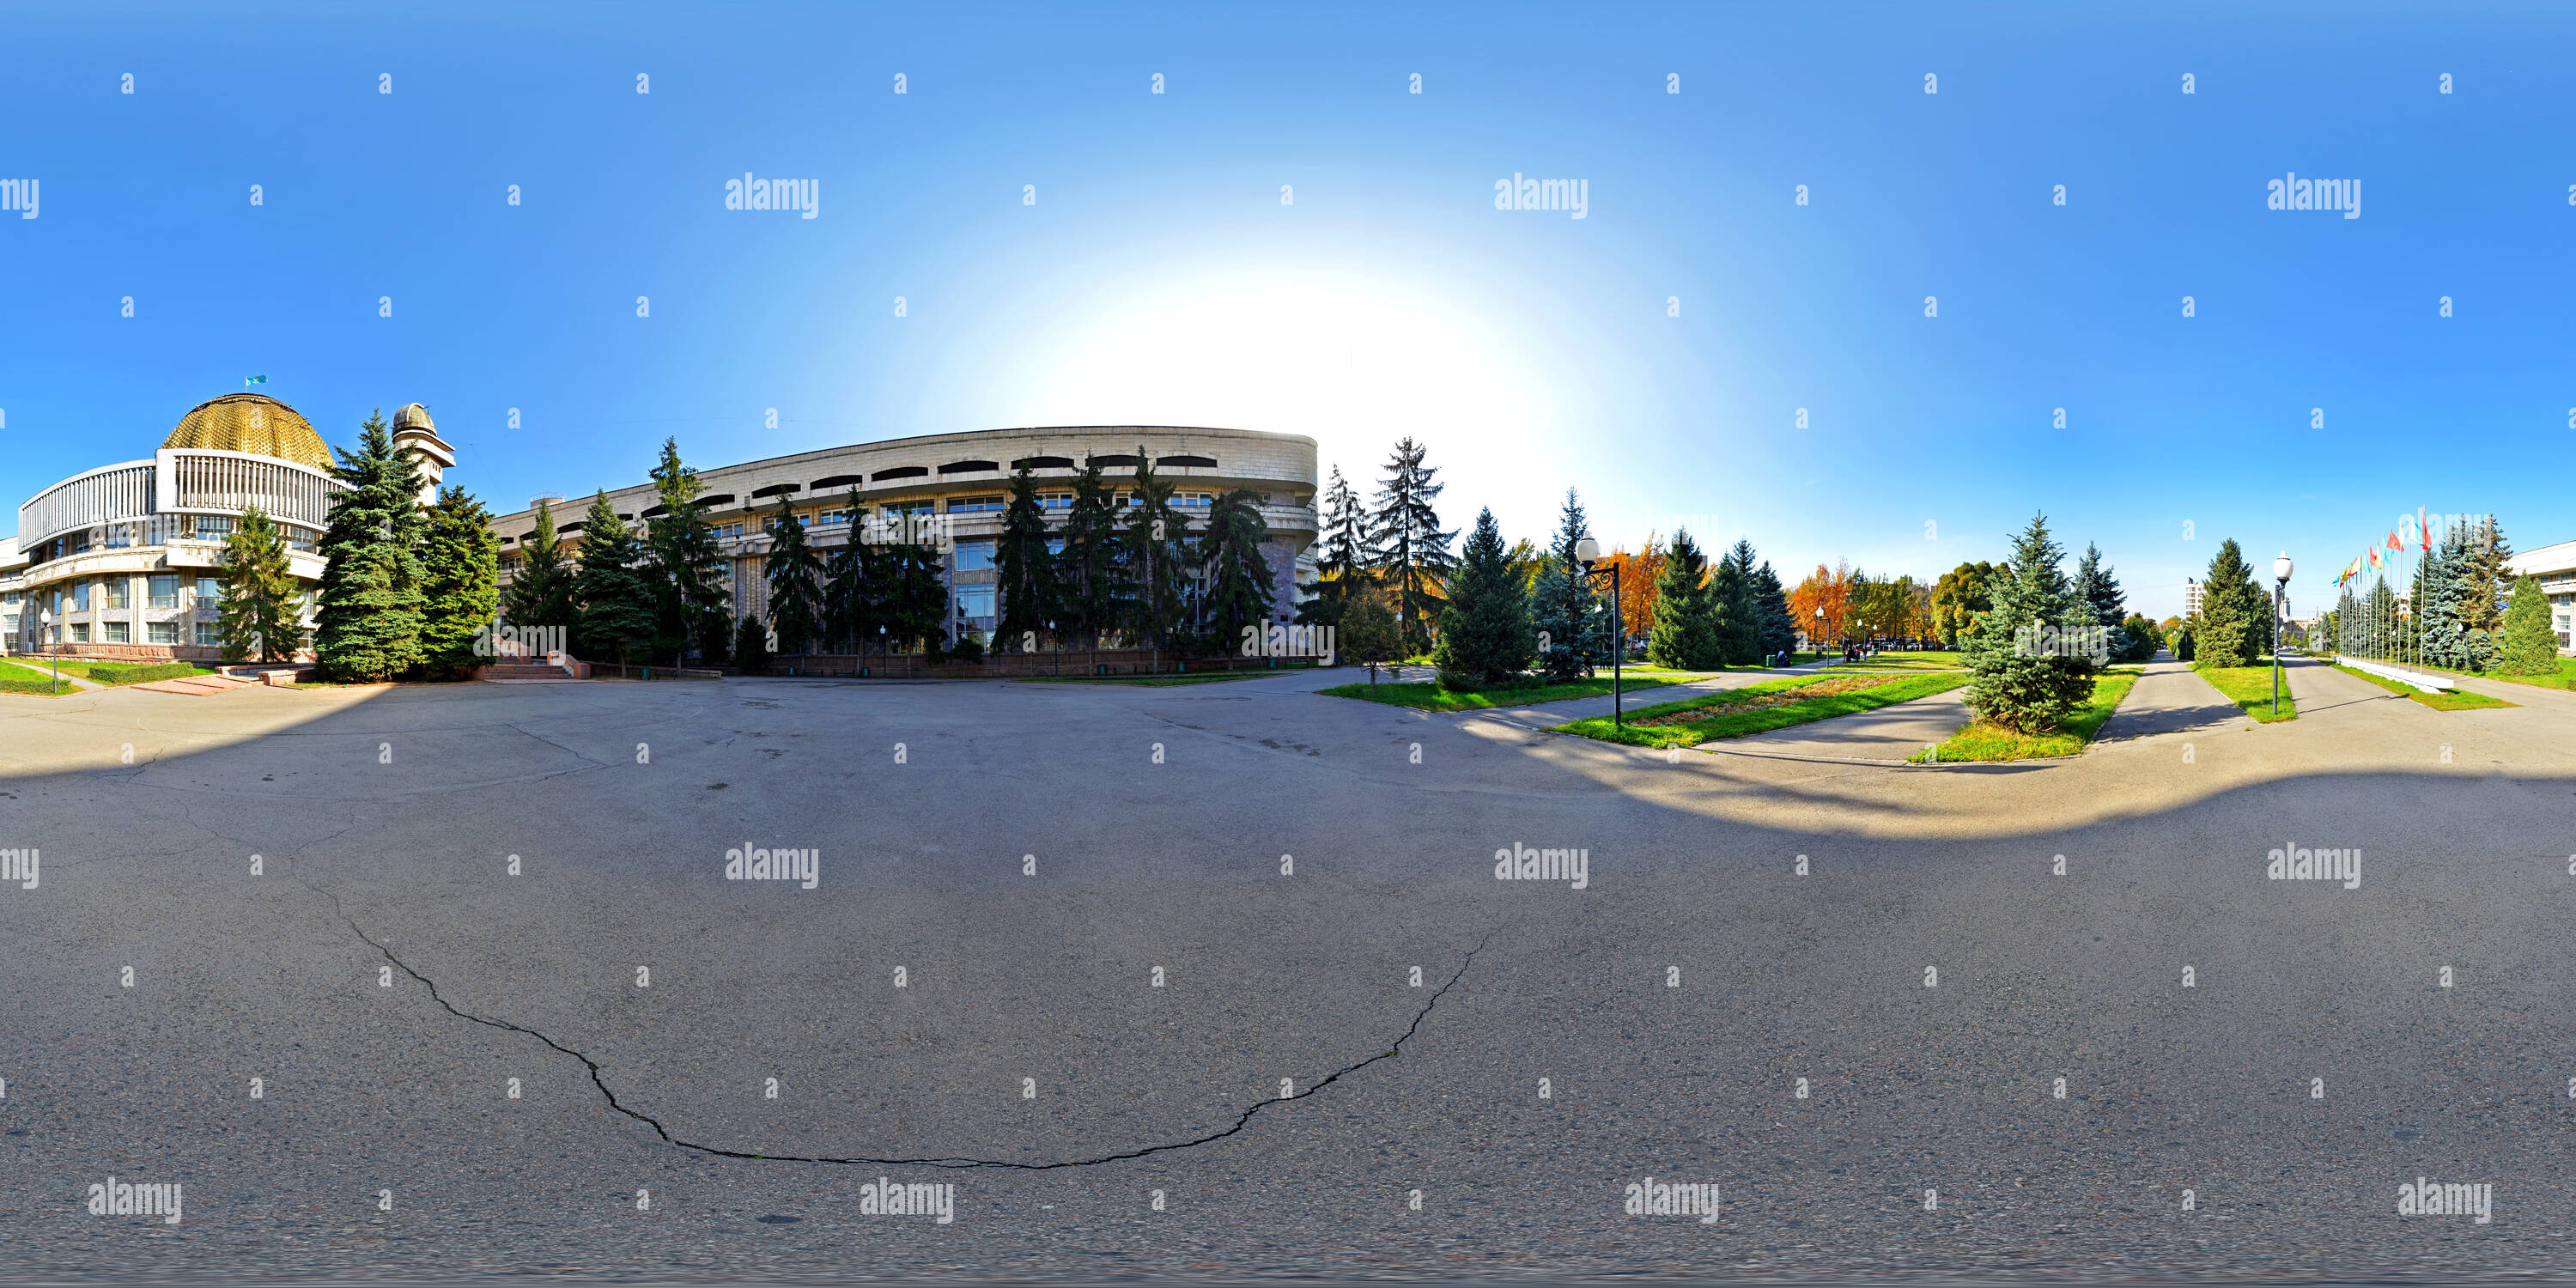 360 Grad Panorama Ansicht von Von Almaty Kinder republikanischen Palast